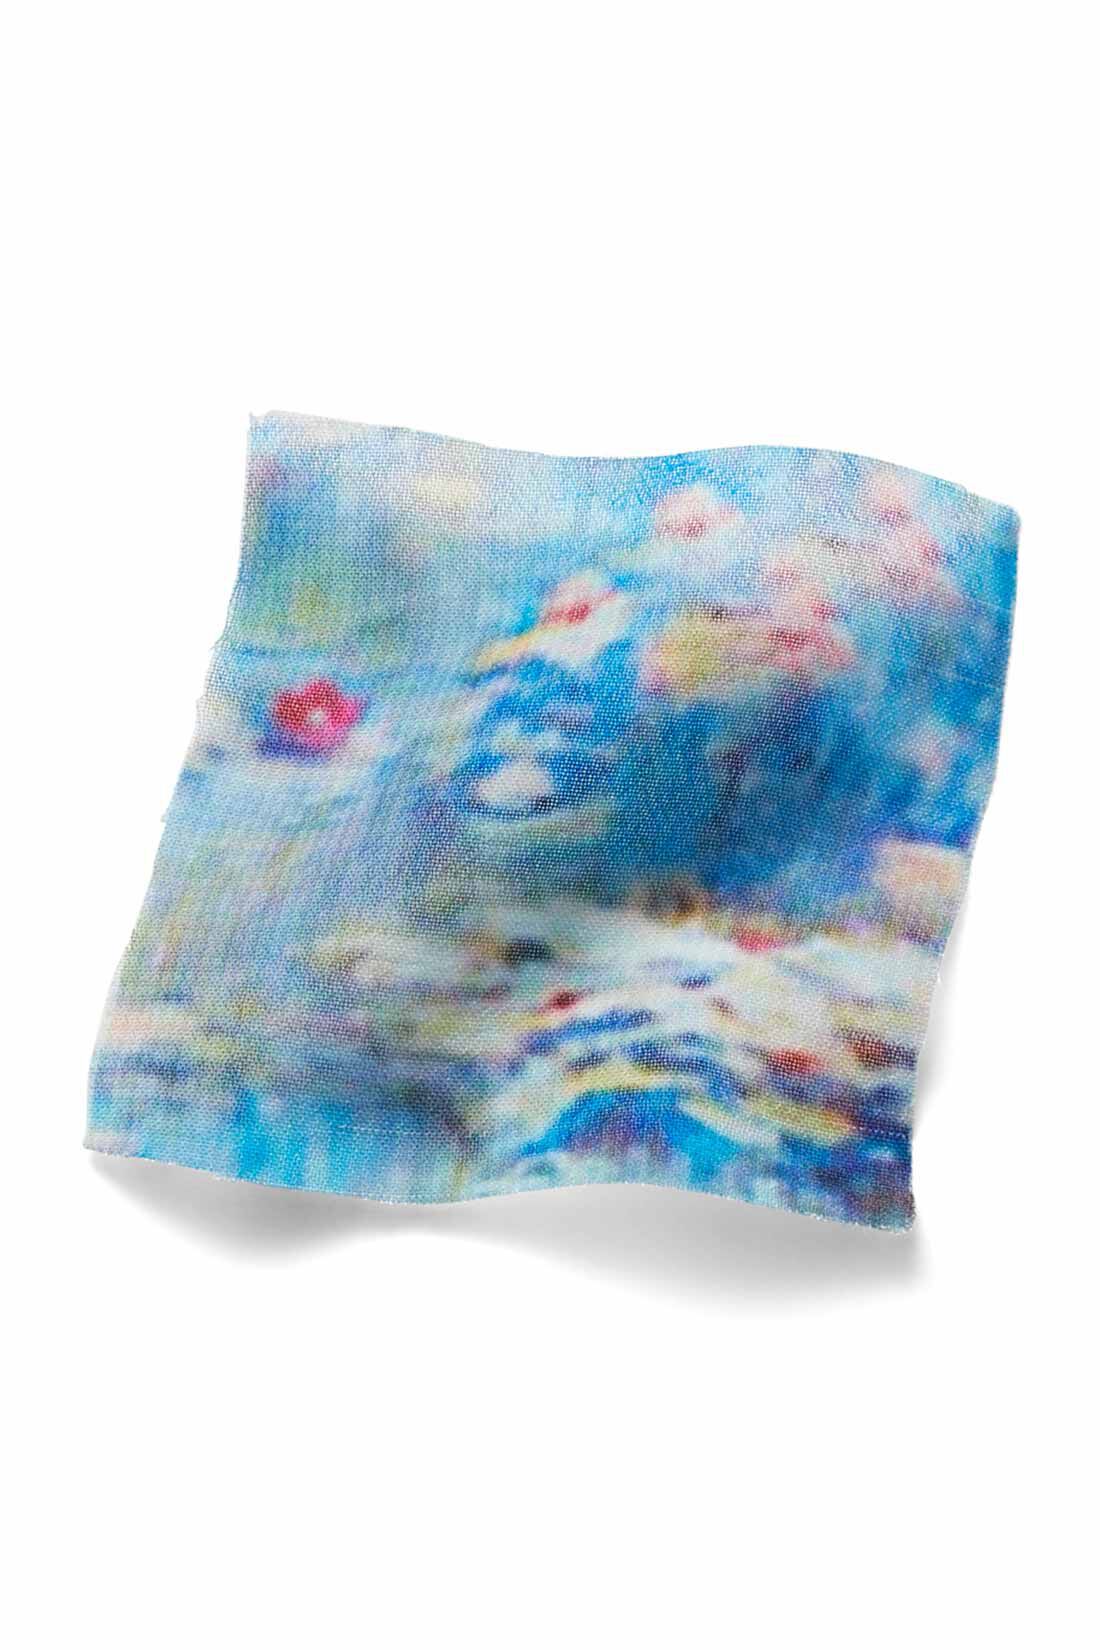 IEDIT[イディット]　モネの睡蓮をまとうシフォンスカート〈ブルー〉|原画をもとにパターンを起こし、水面を思わせる、透け感のあるシフォン素材にプリント。 ※お届けするカラーとは異なります。